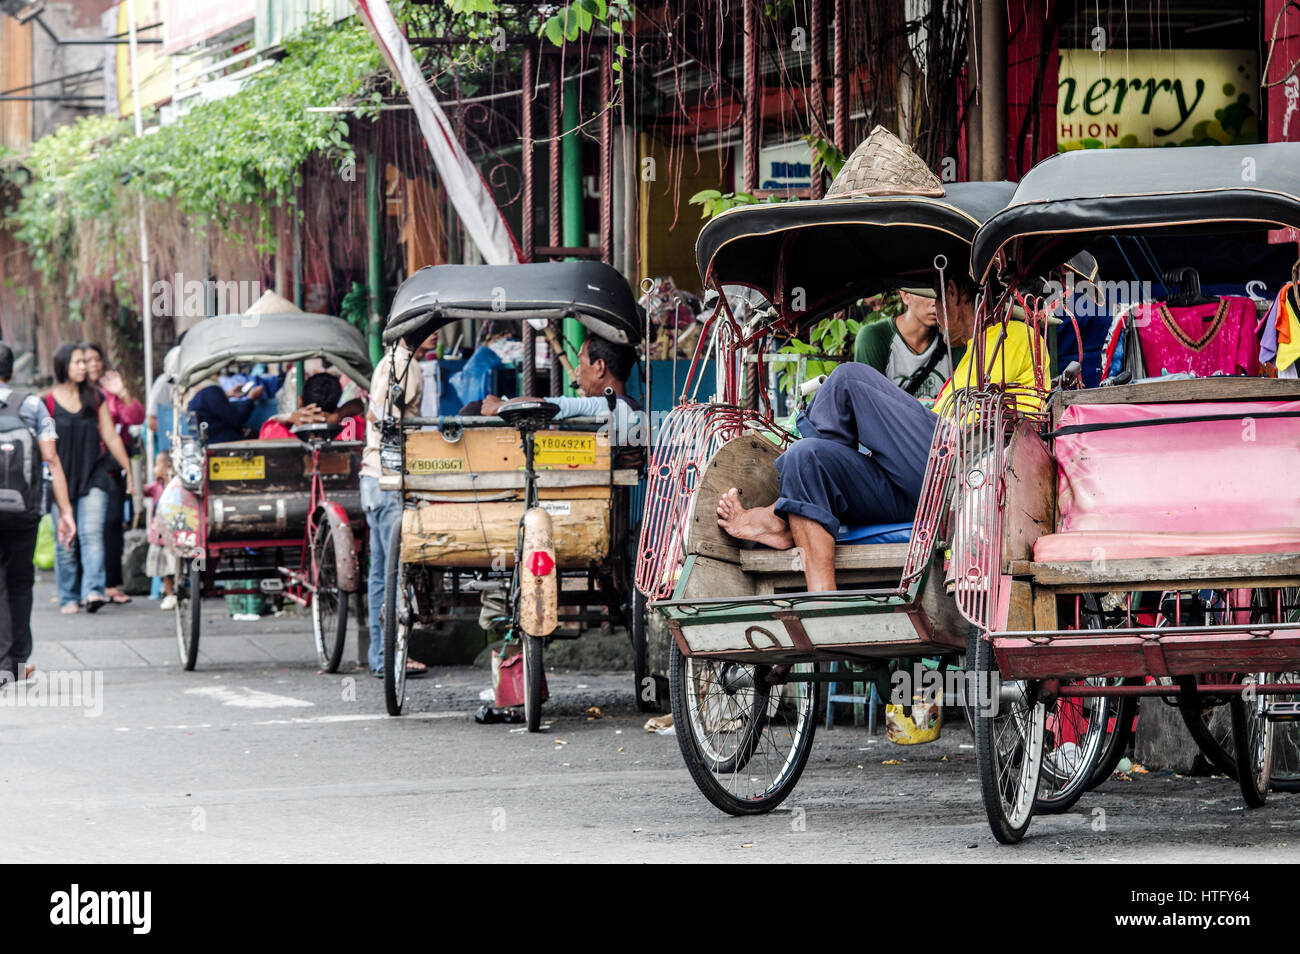 Fahrradrikschas, auch bekannt als Becaks geparkt entlang der Malioboro Street in Yogyakarta - Java, Indonesien Stockfoto